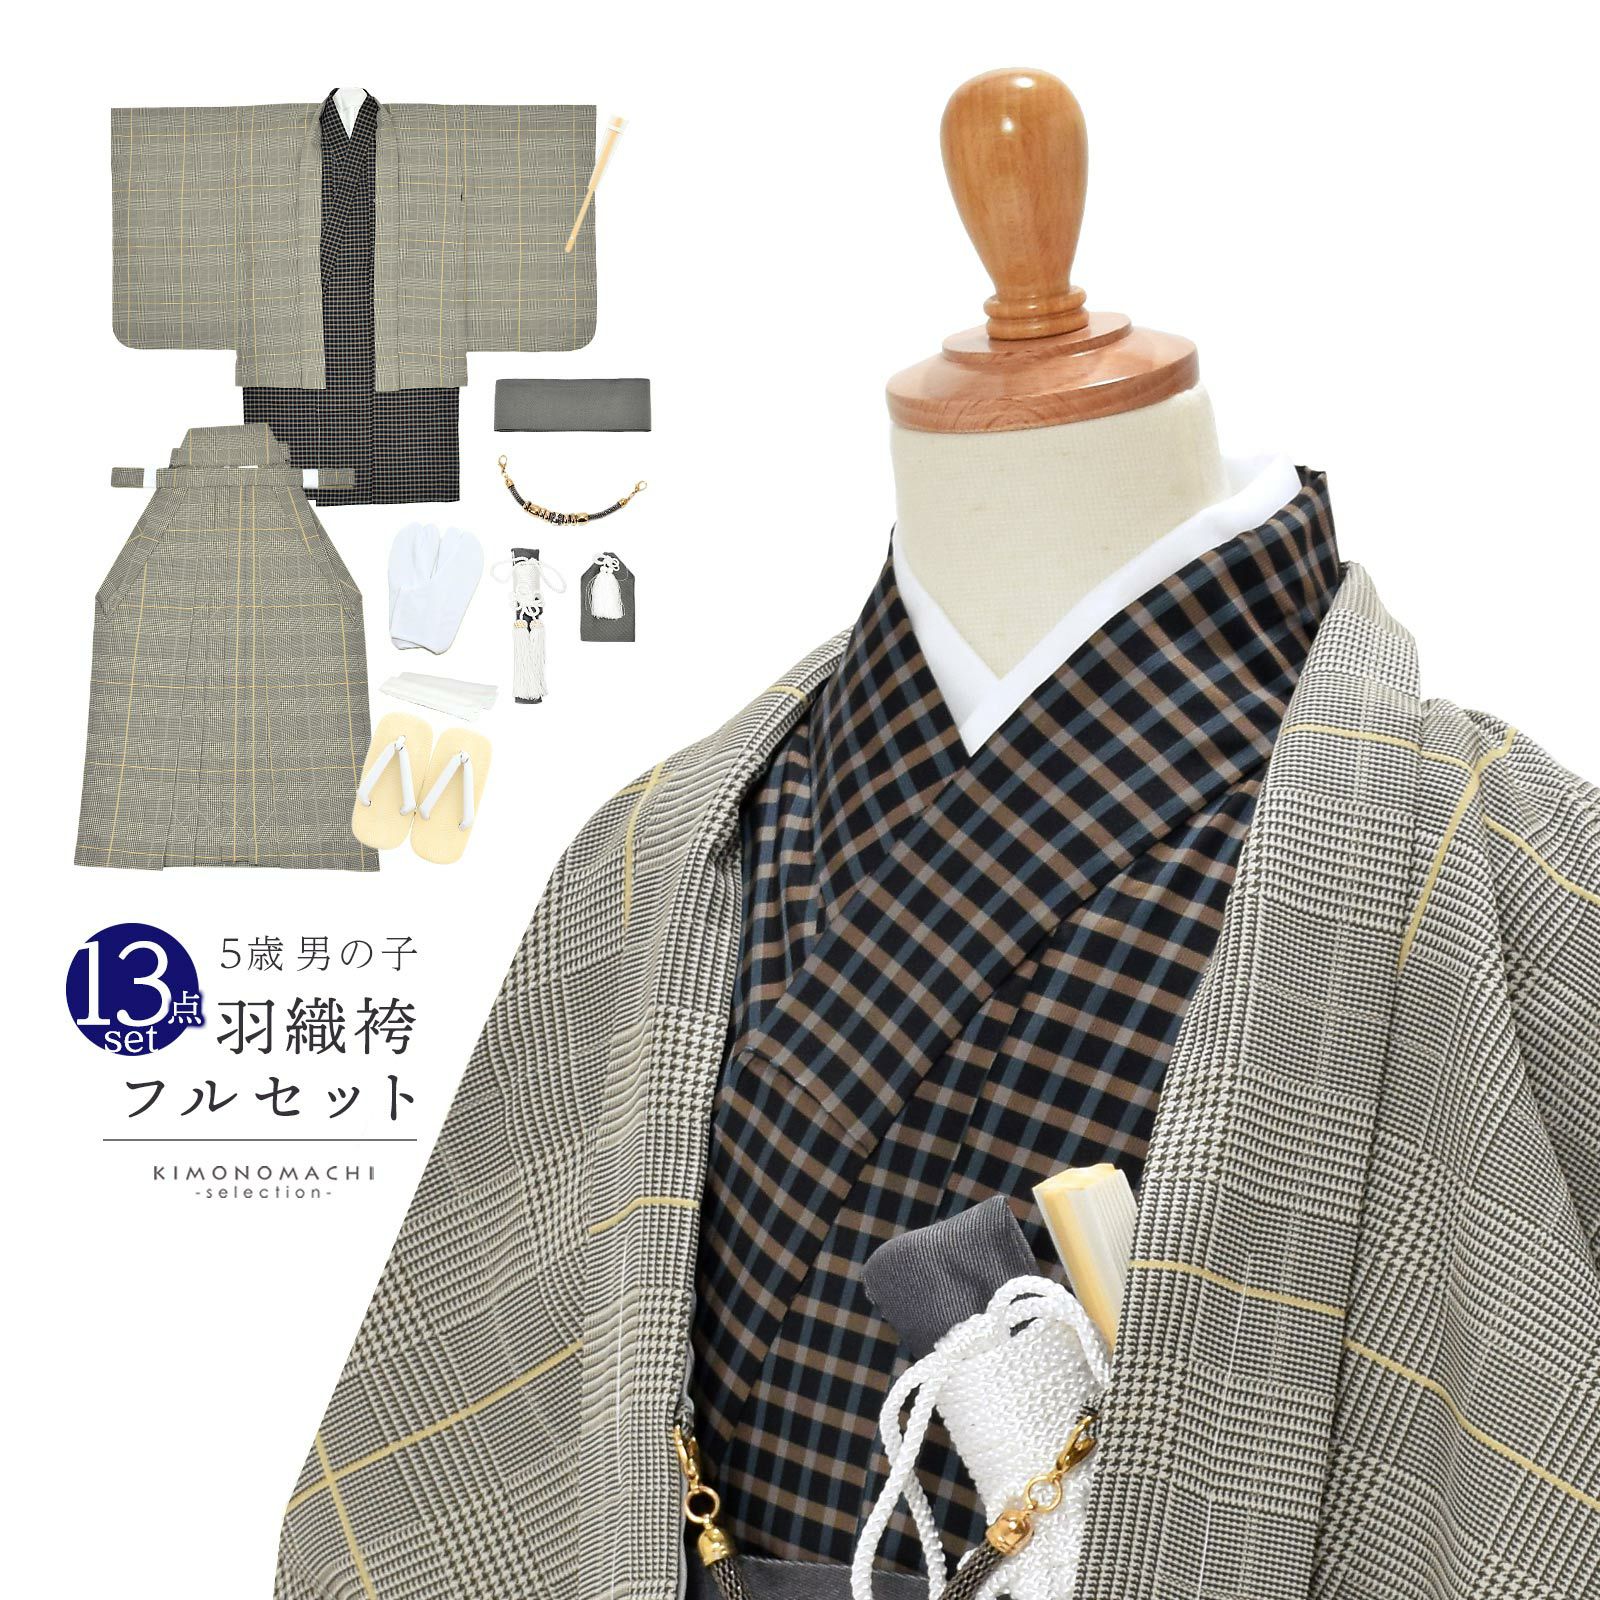 七五三 着物 男の子 5歳 羽織袴セット 「グレンチェック 格子」 フル